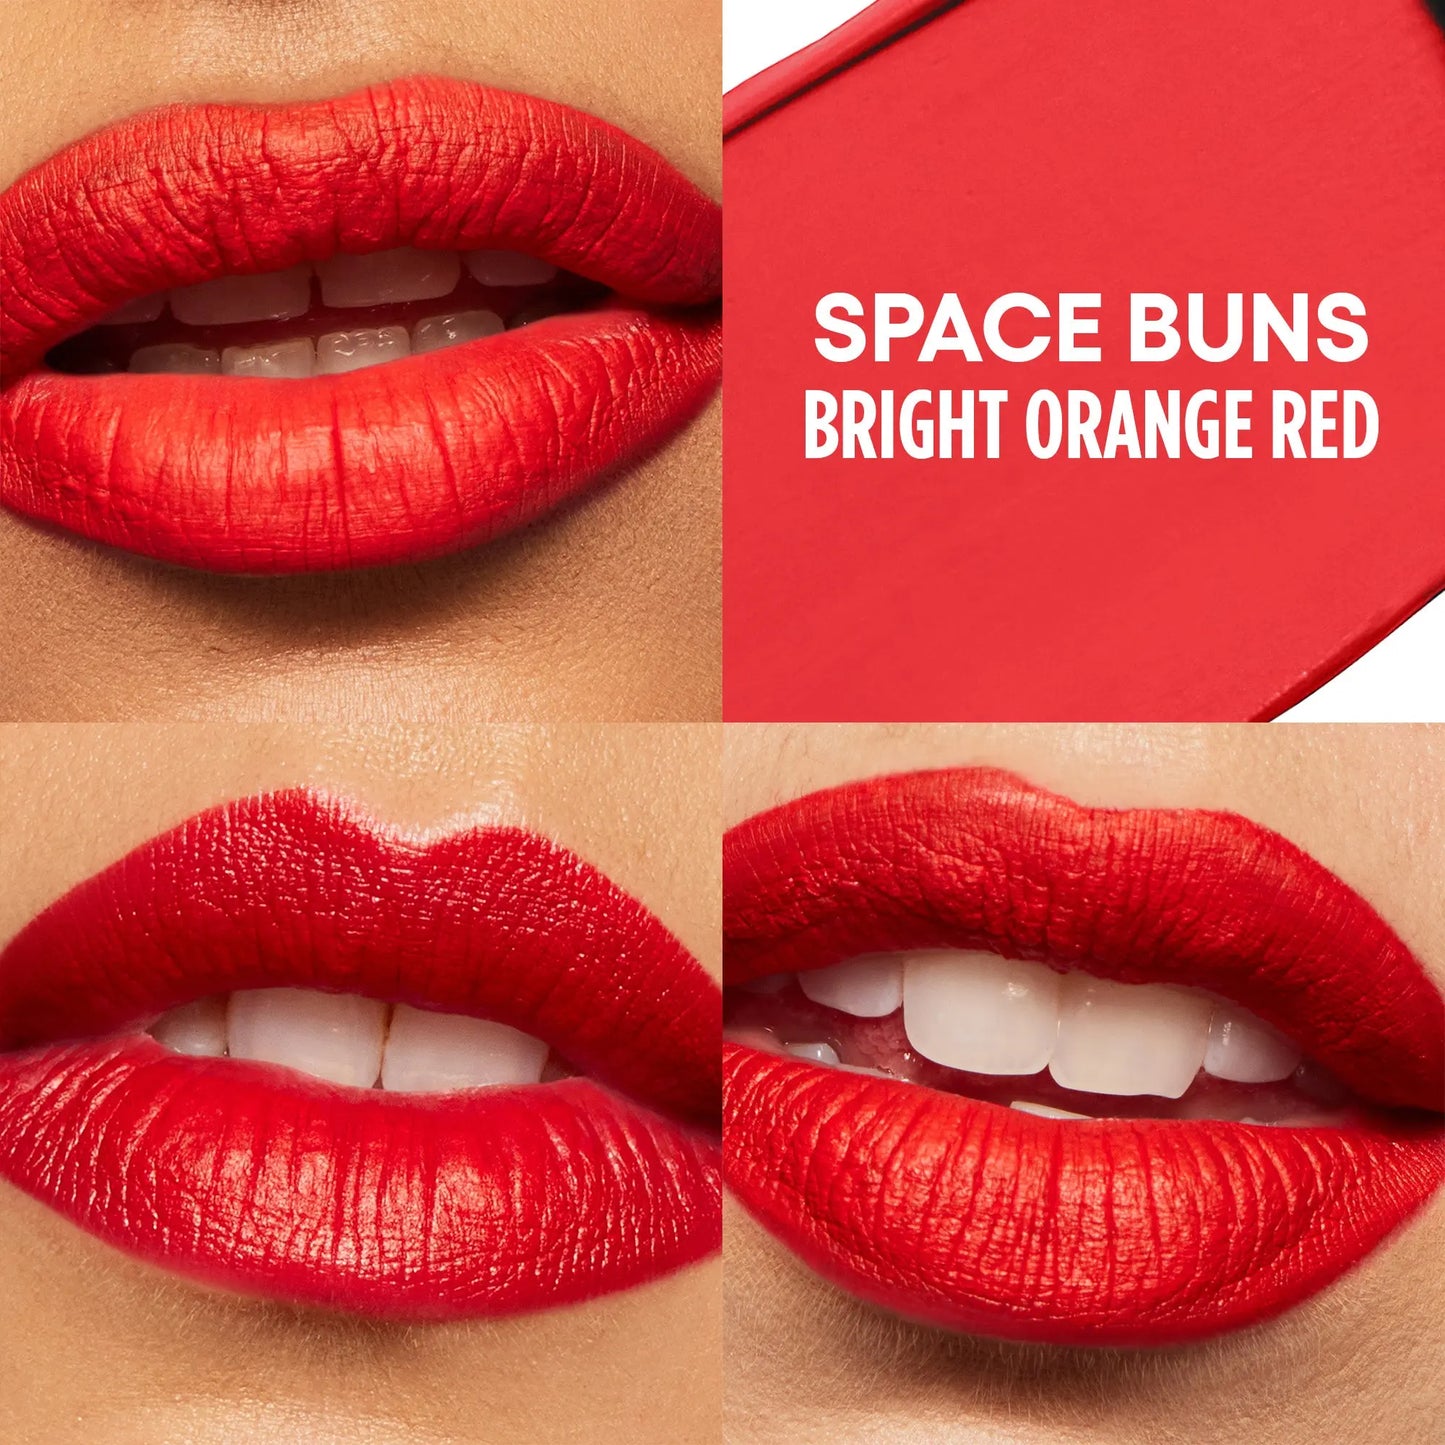 GXVE Space Buns - High-Performance Matte Liquid Lipstick